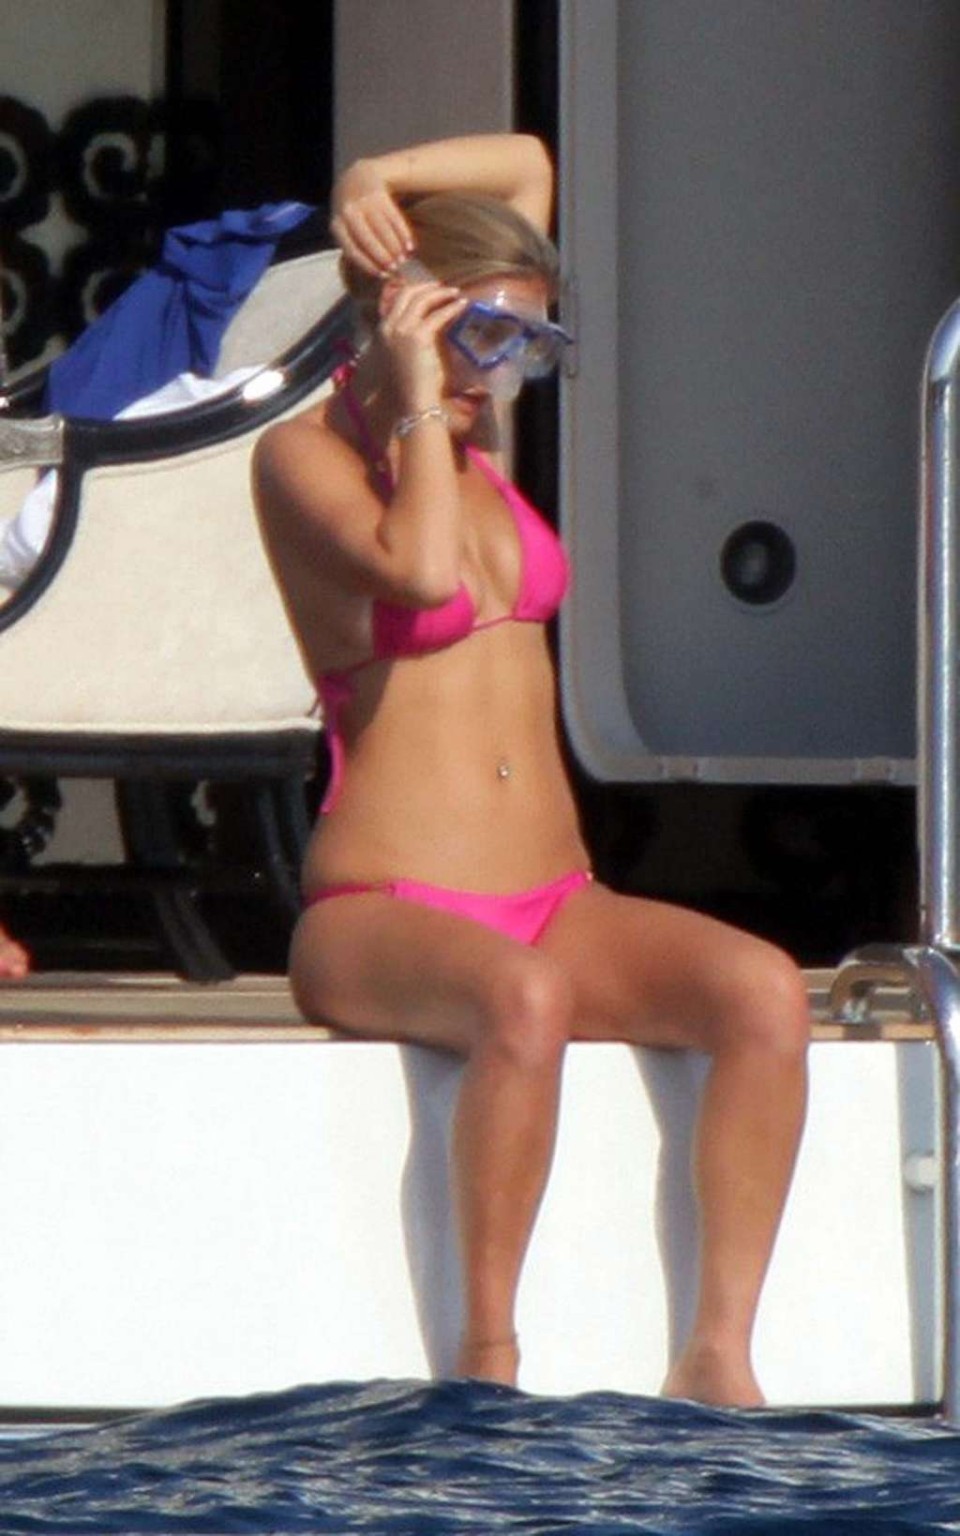 Bar refaeli guardando molto sexy in bikini rosso su yacht foto paparazzi
 #75336768